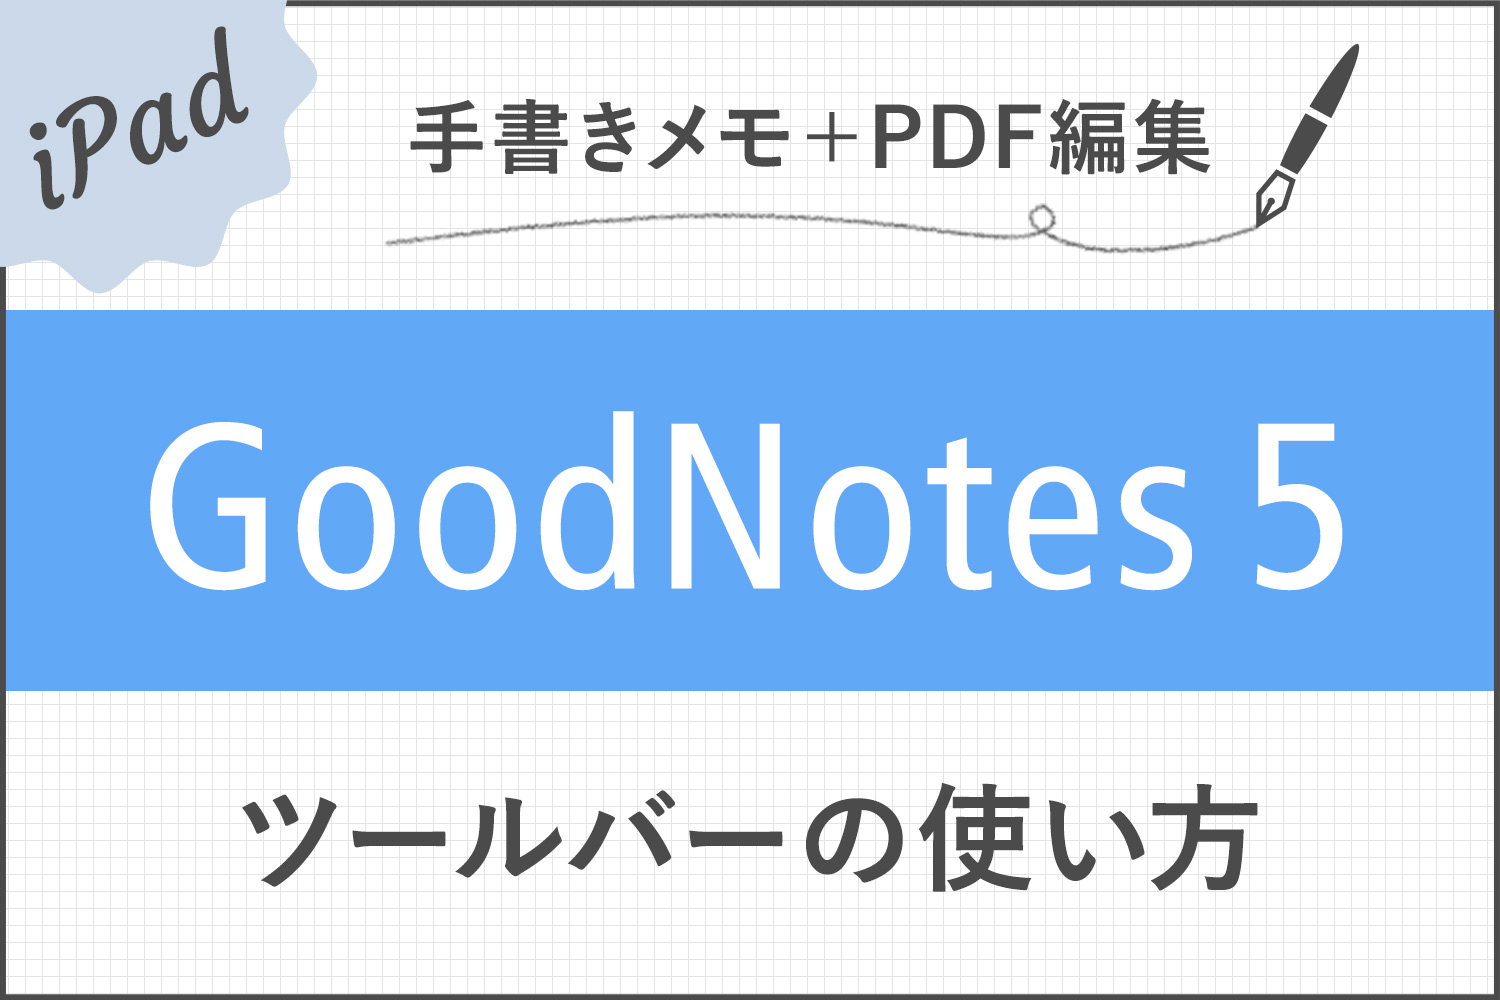 【GoodNotes 5】ツールバーの使い方(ペン/消しゴム/蛍光ペン/シェイプツール/タイピングモード/テキストツール/拡大など)